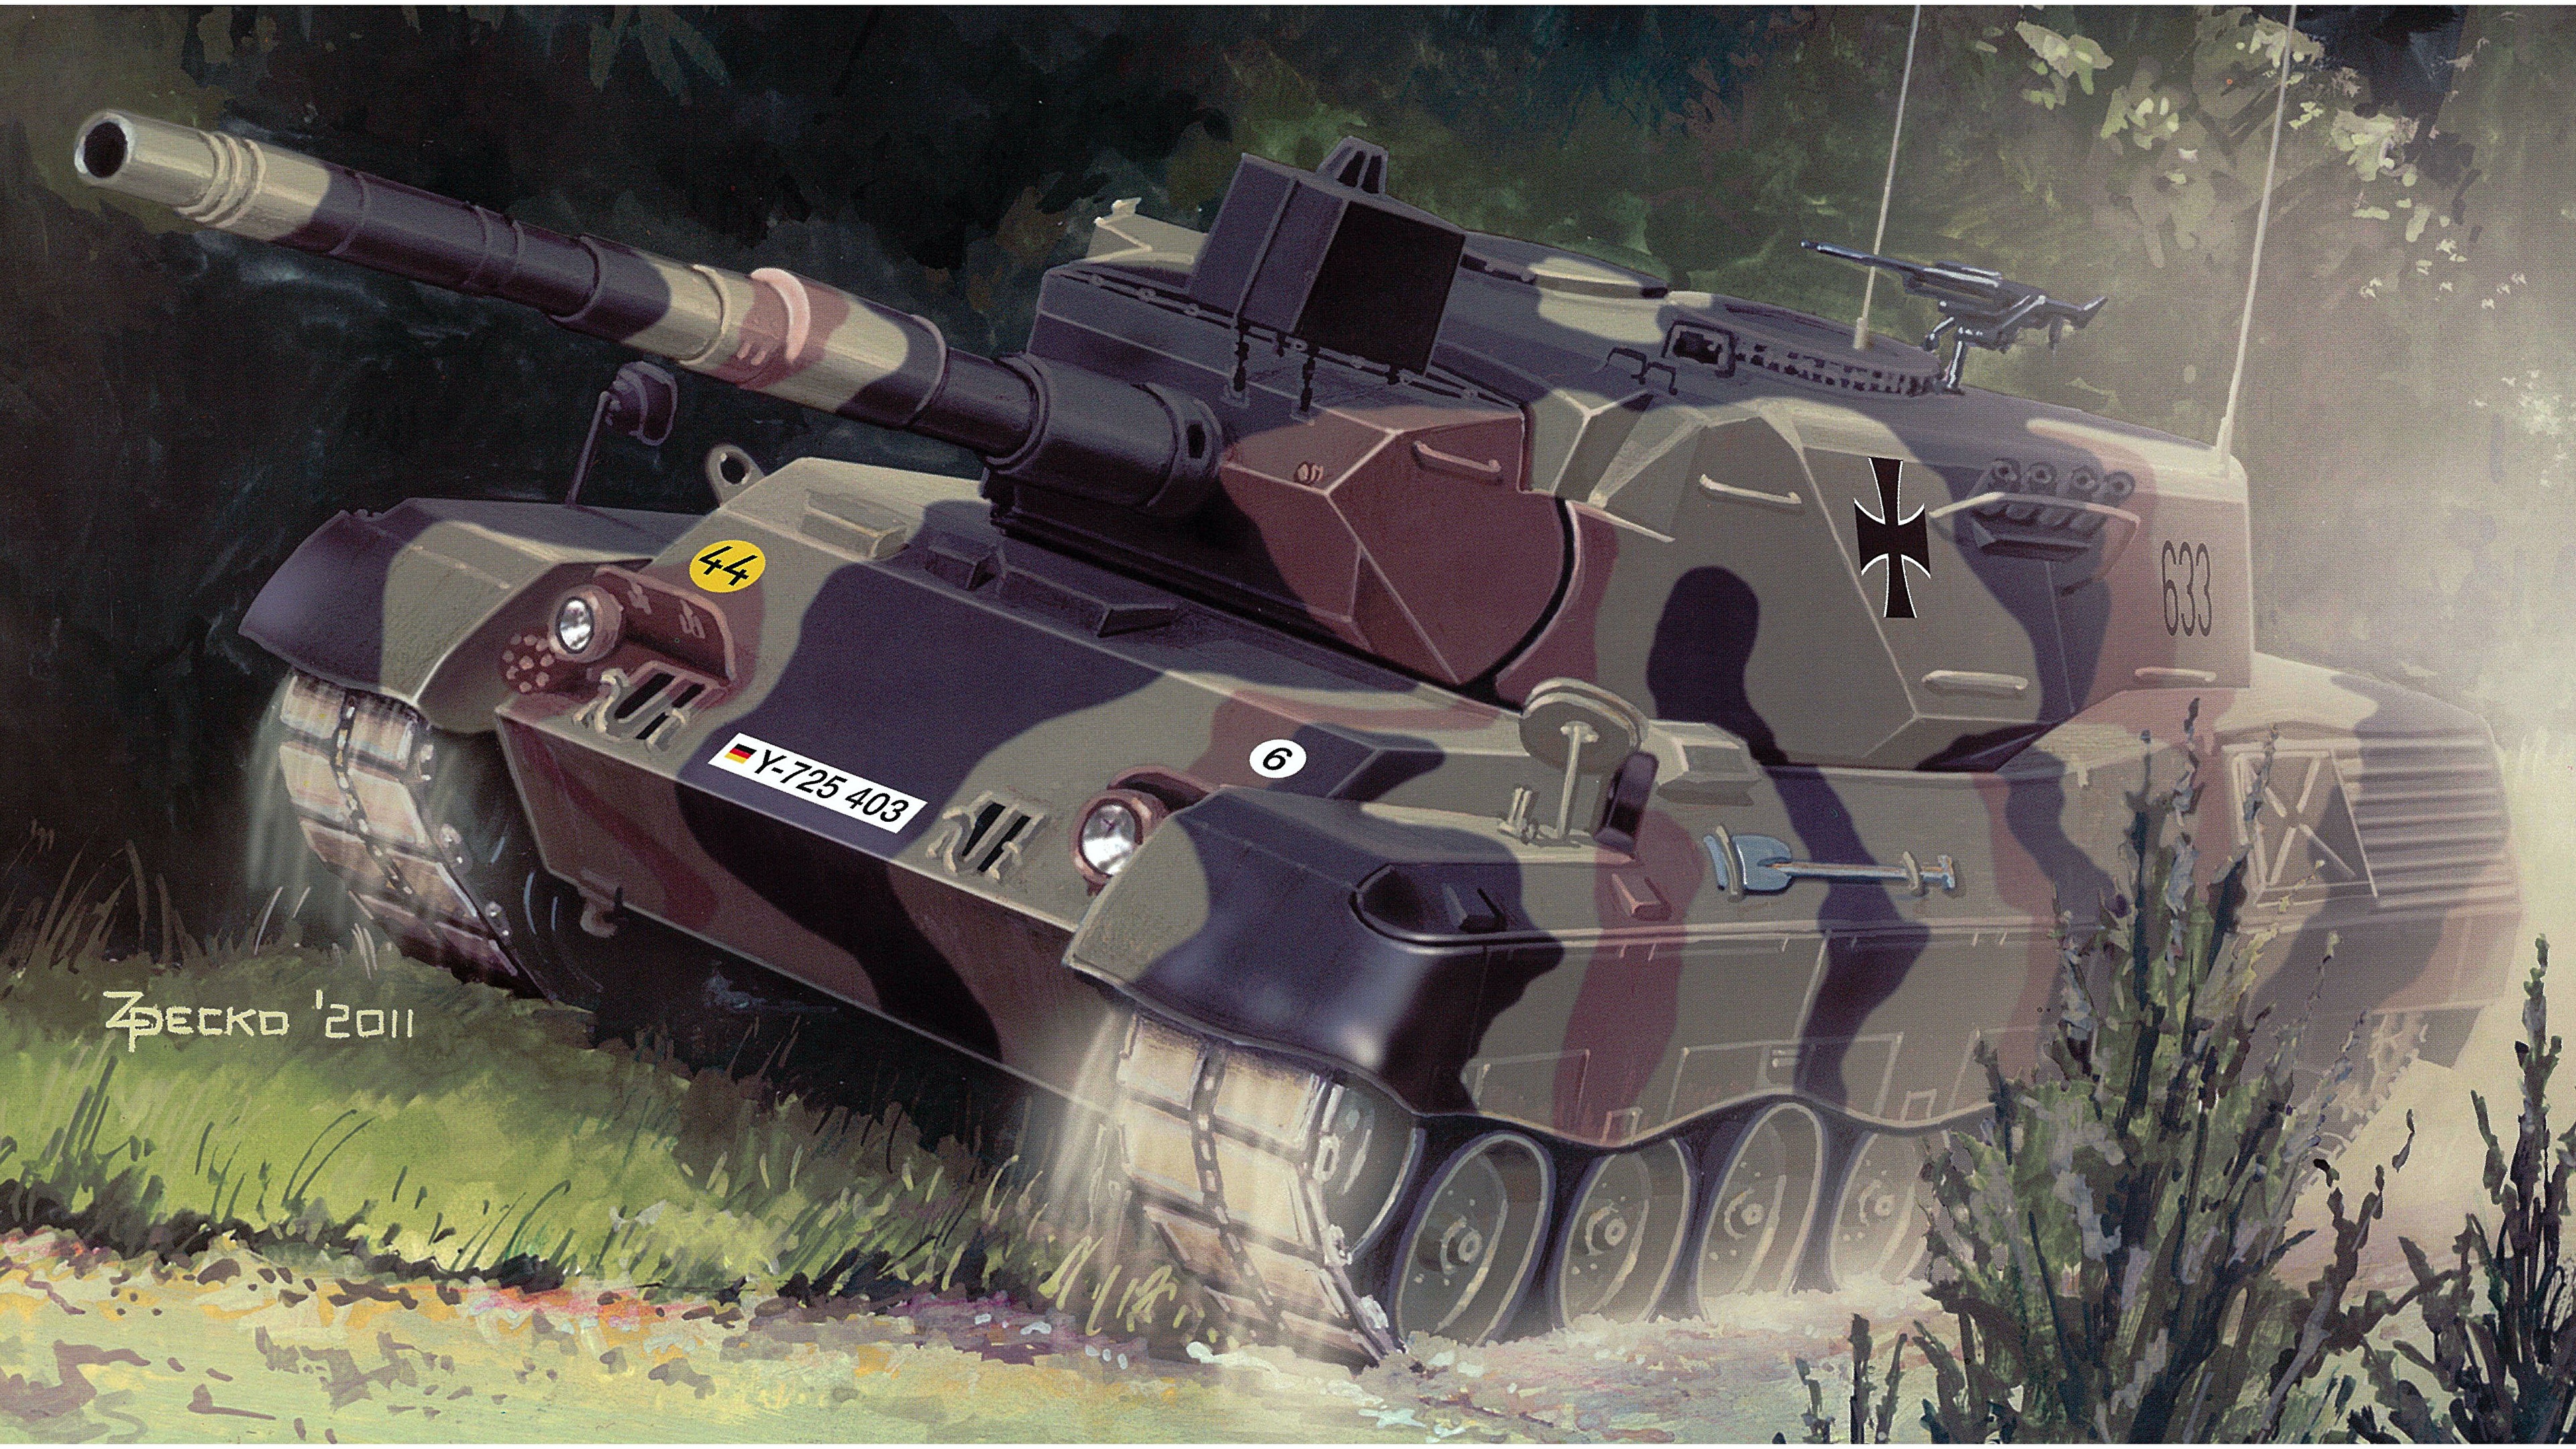 壁紙 3840x2160 戦車 描かれた壁紙 Leopard 1a4 ドイツ語 陸軍 ダウンロード 写真